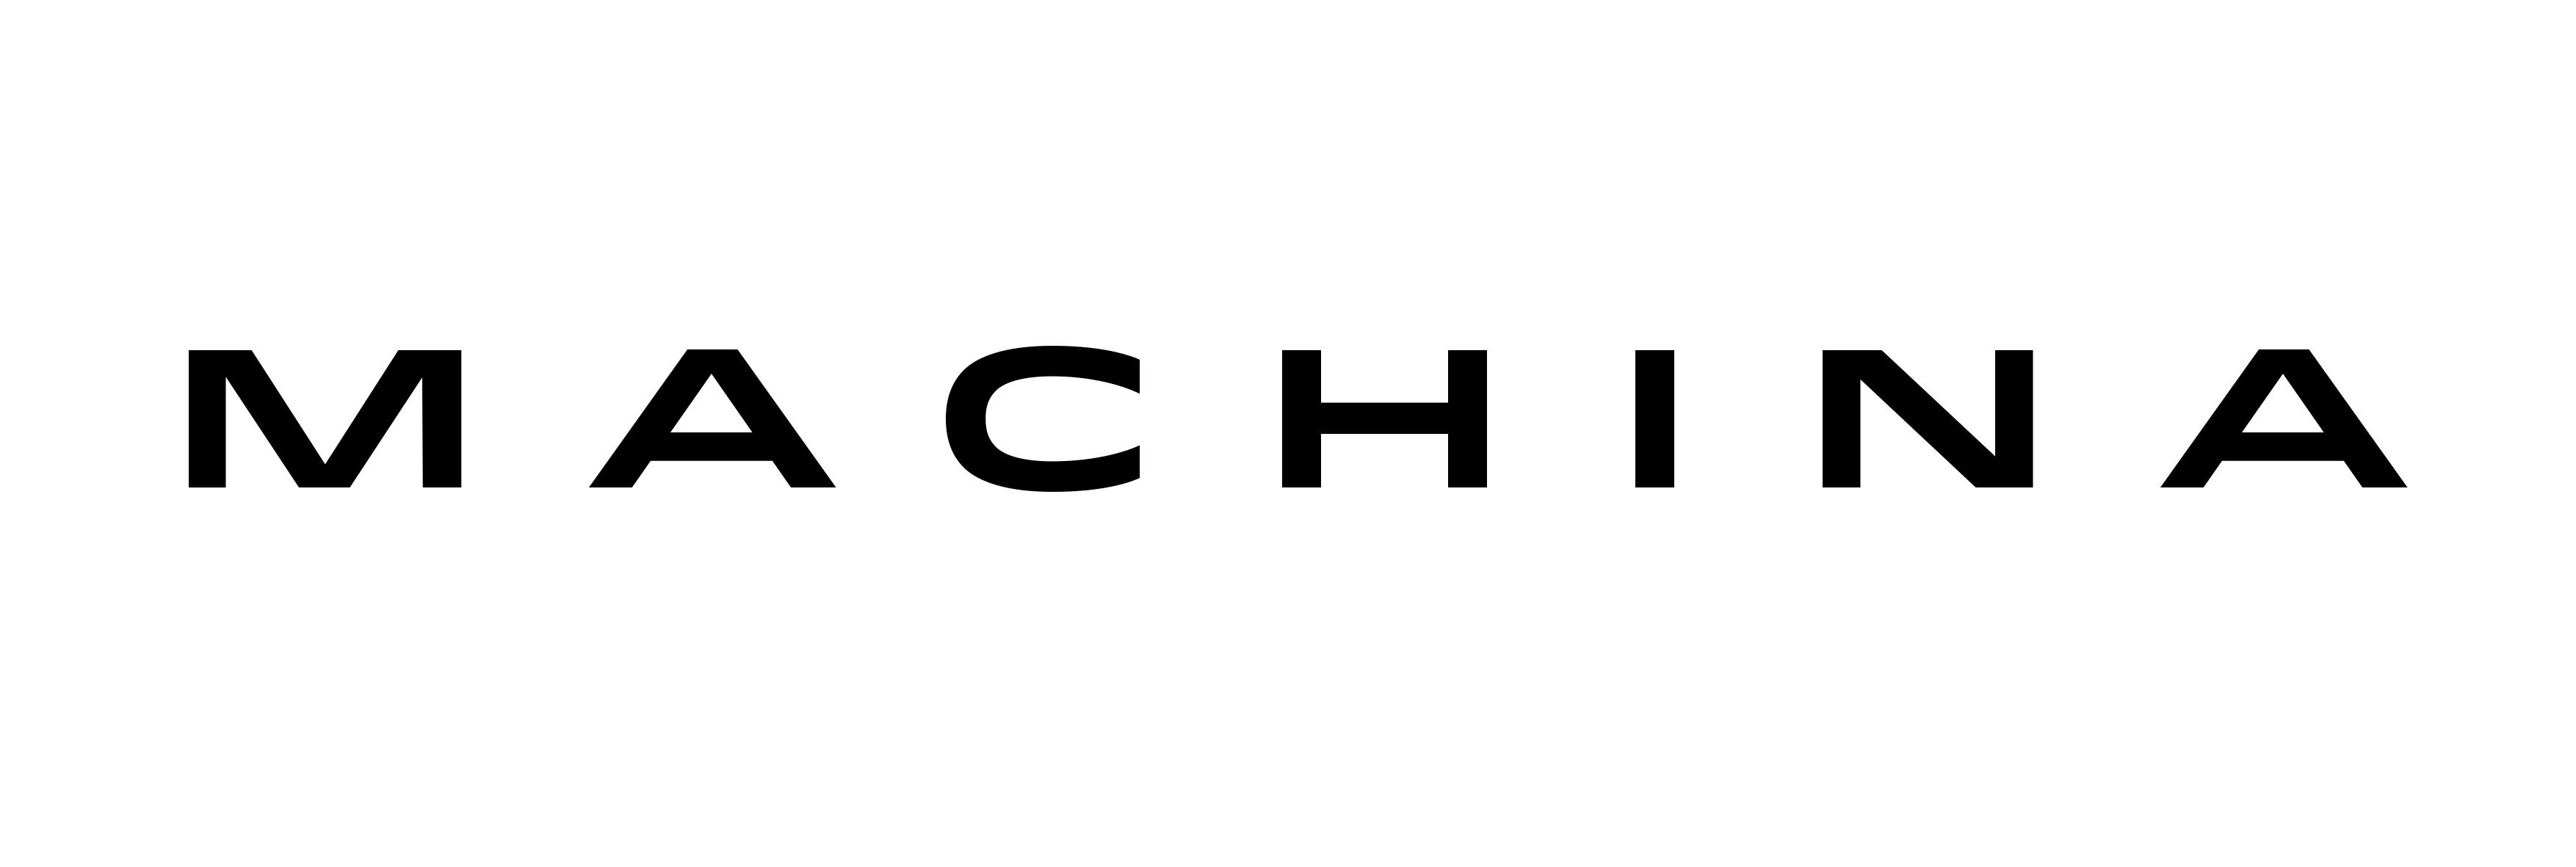 machina-logo-new